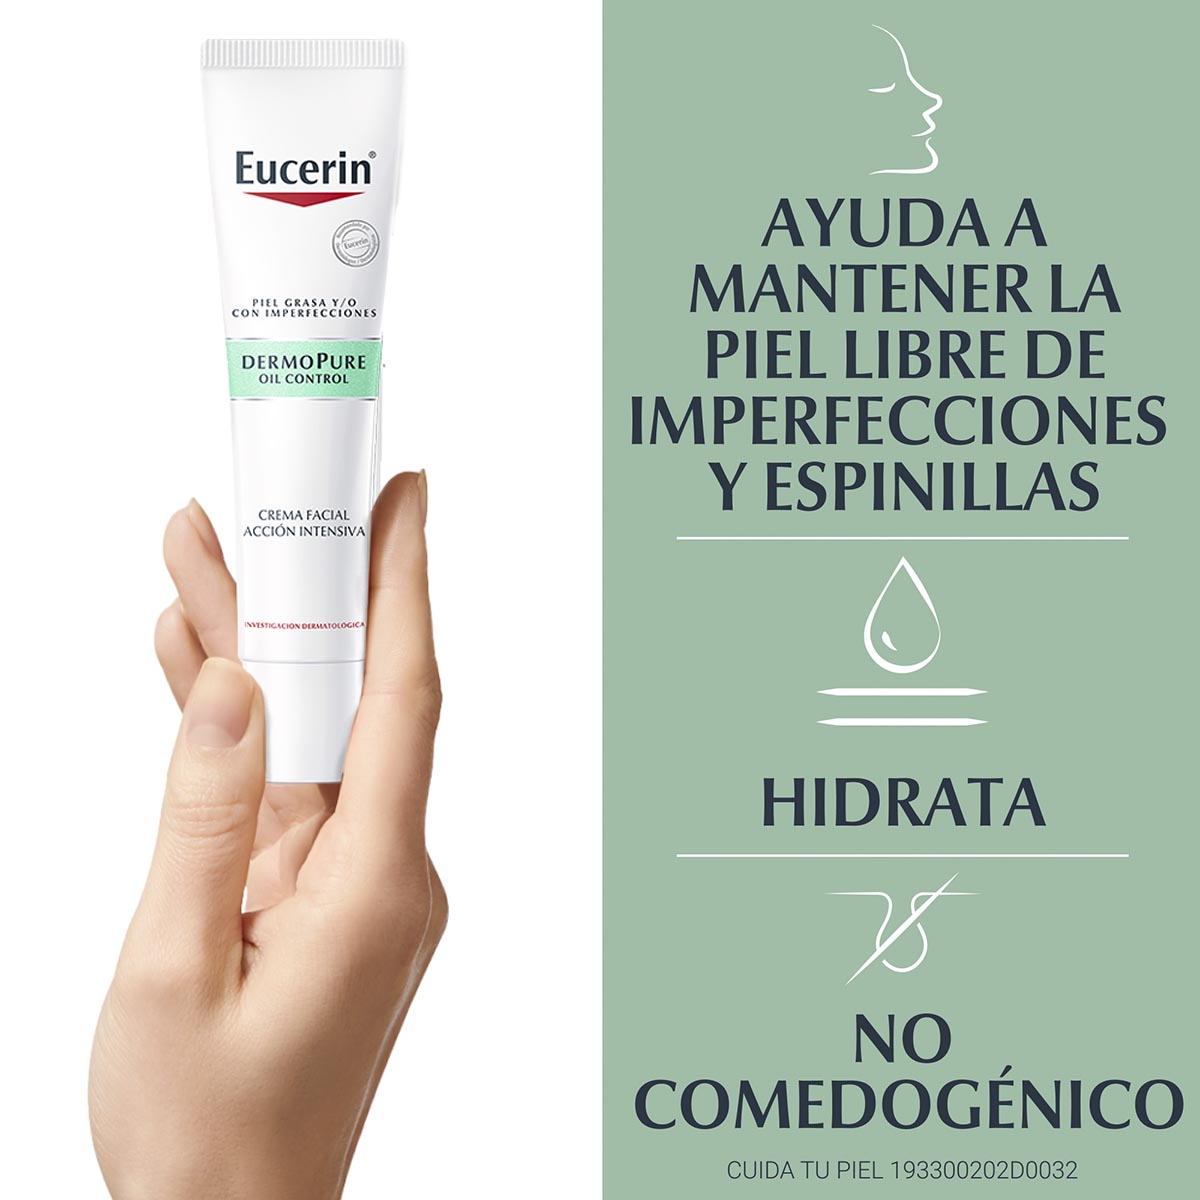 Eucerin gel limpiador facial dermopure piel grasa y/o con tendencia ac –  Derma Express MX